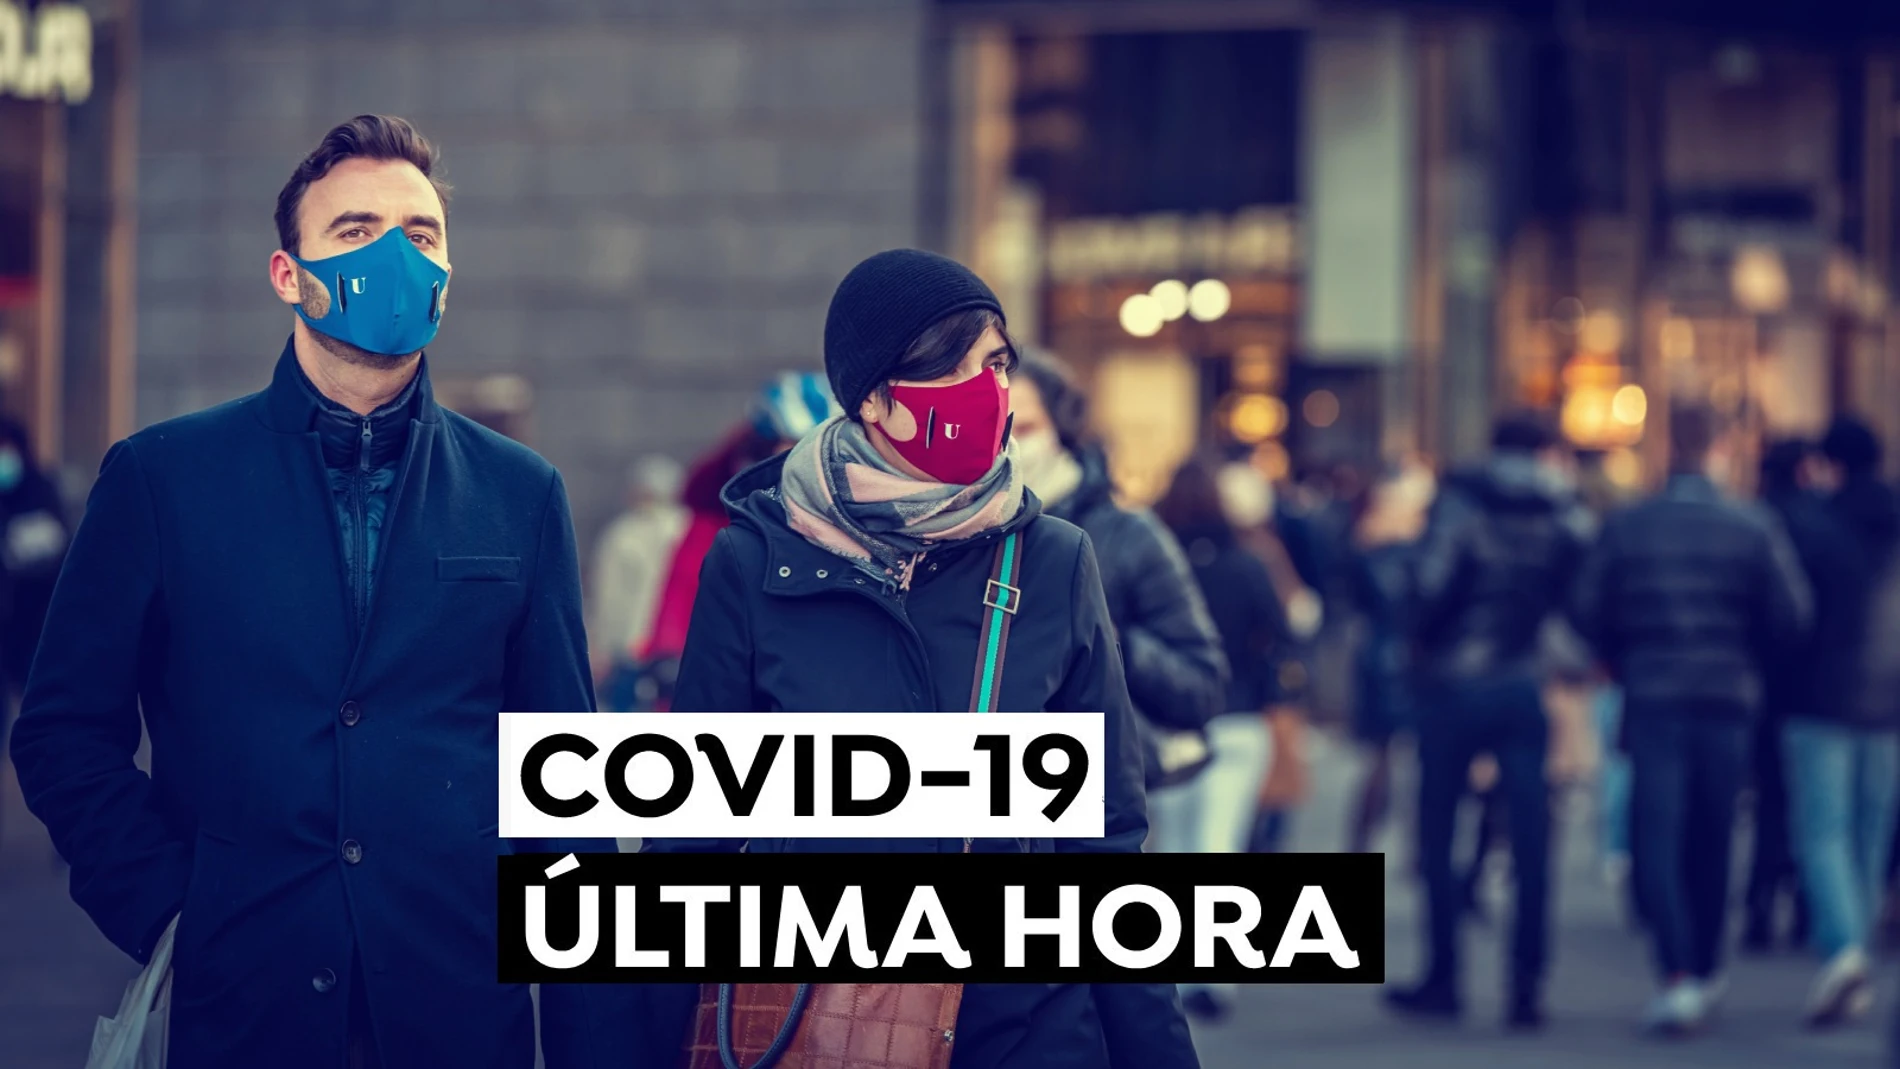 Coronavirus España hoy: Nuevos casos de COVID-19, vacuna y última hora de las restricciones en Navidad